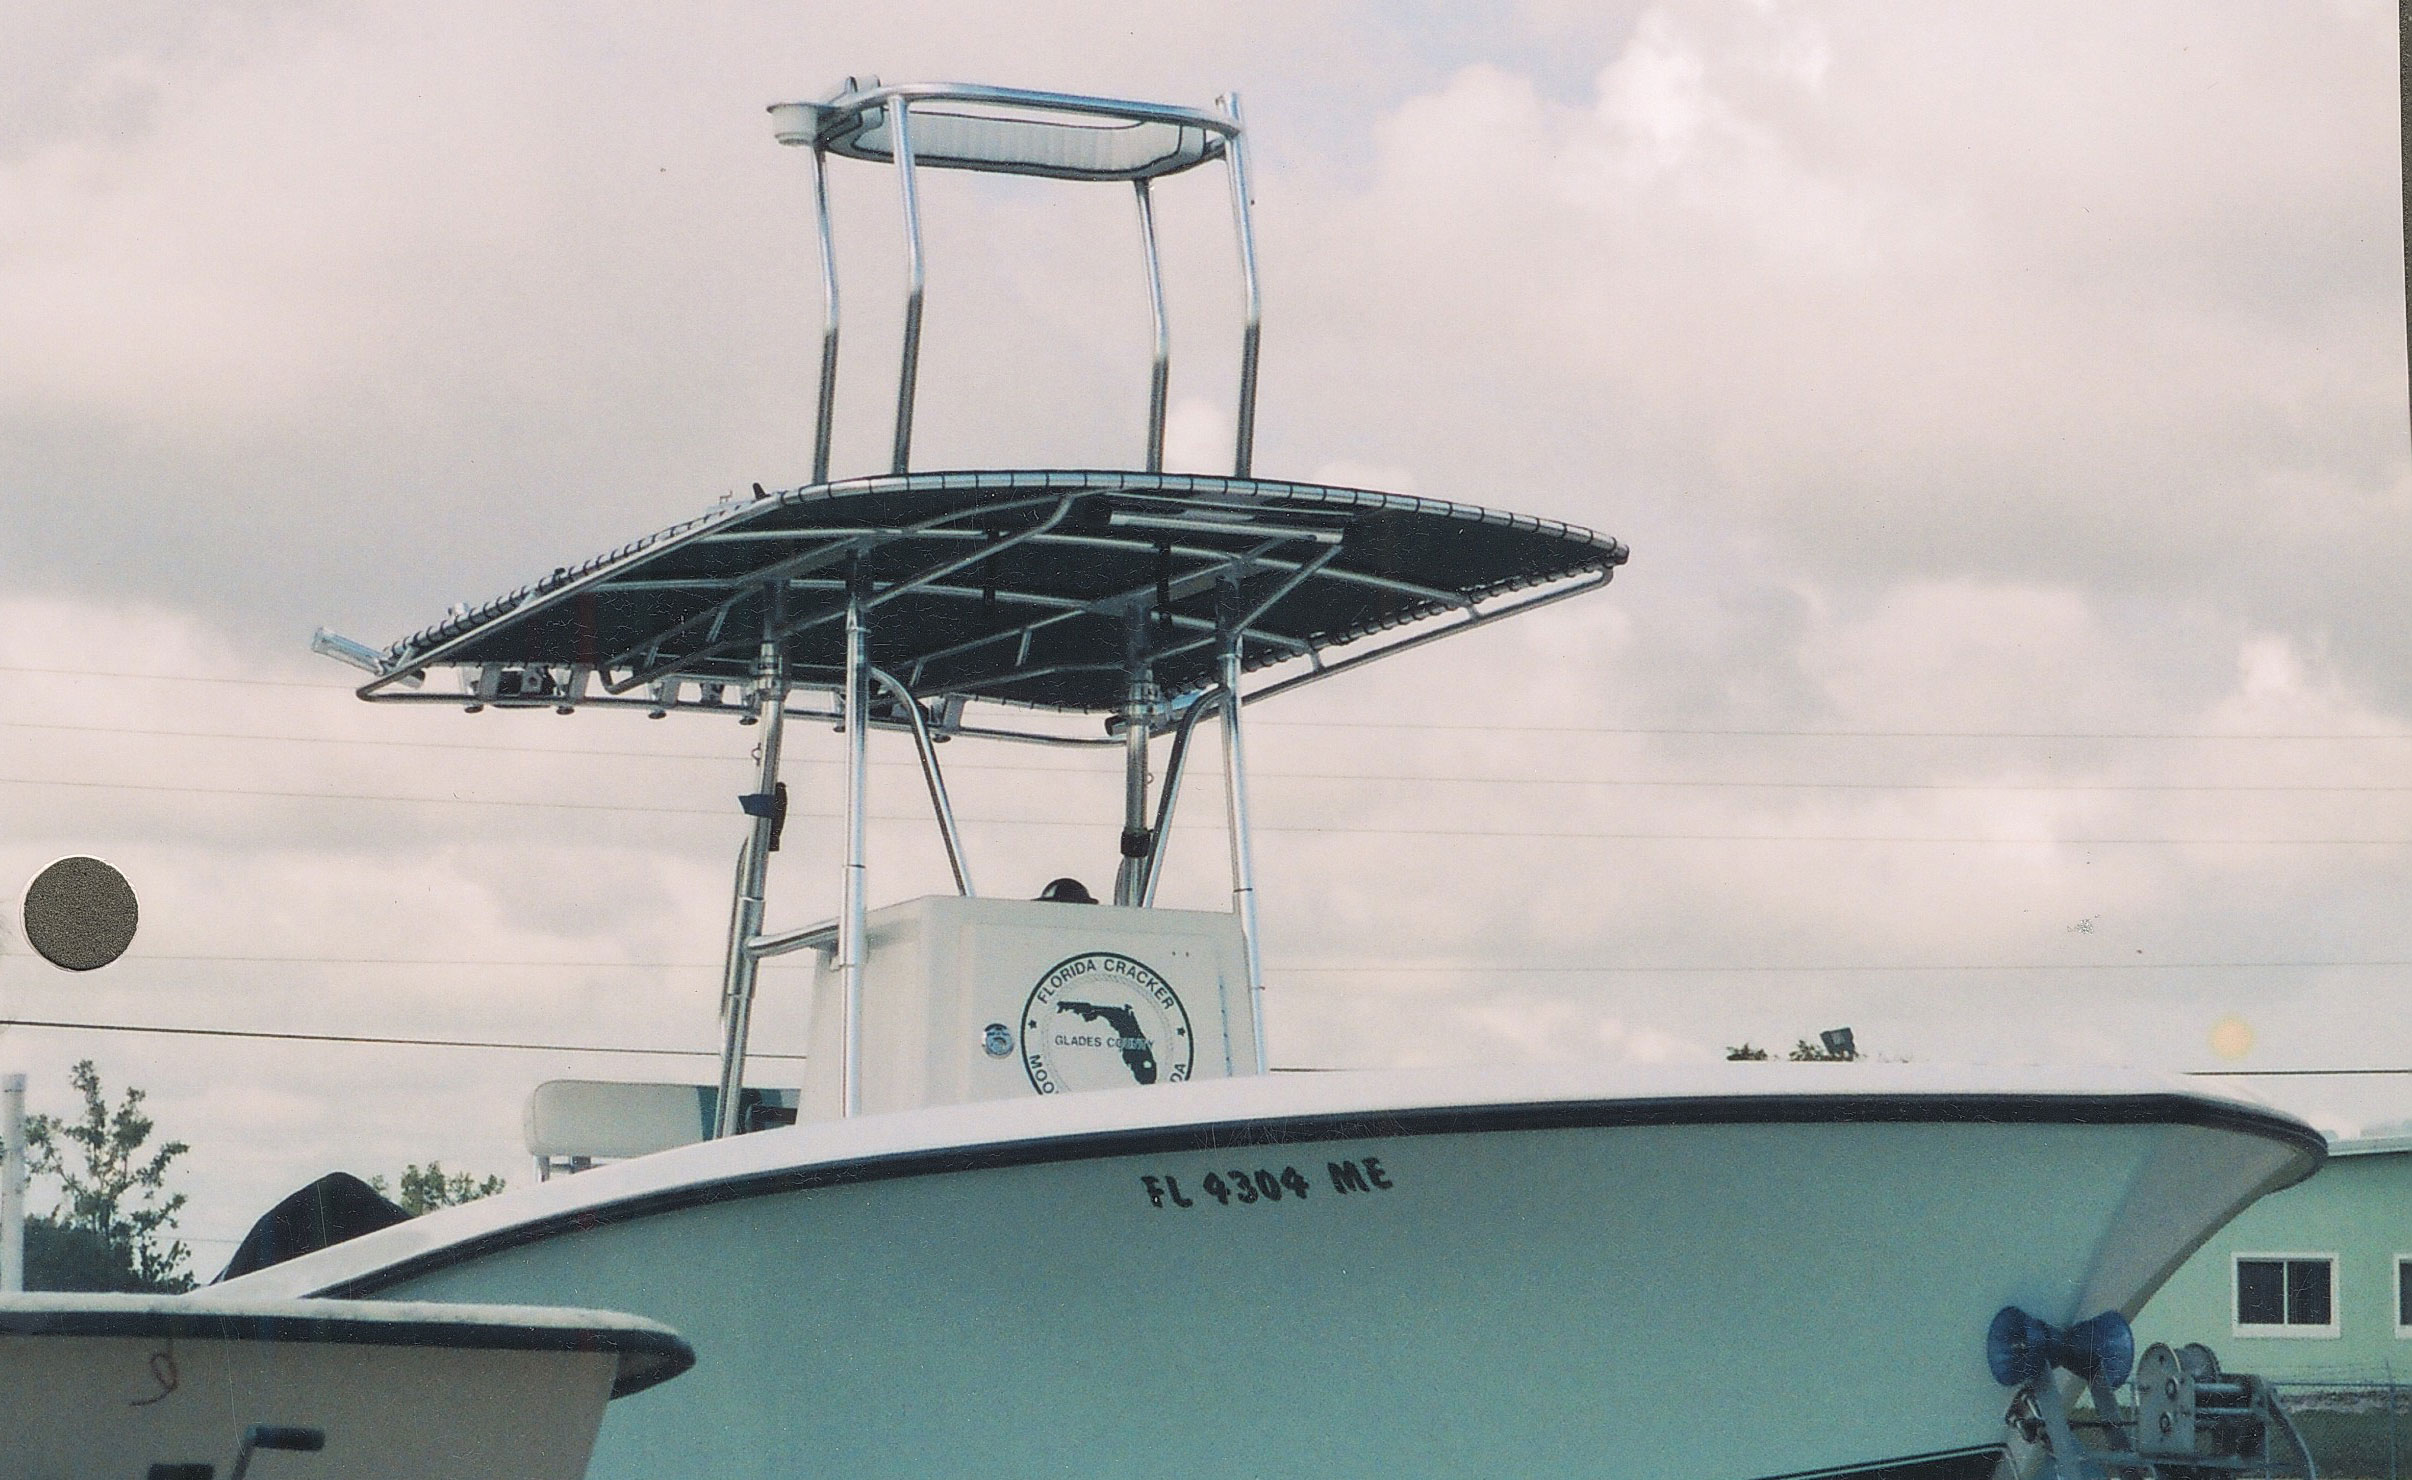 T-N-T Boatworks Florida